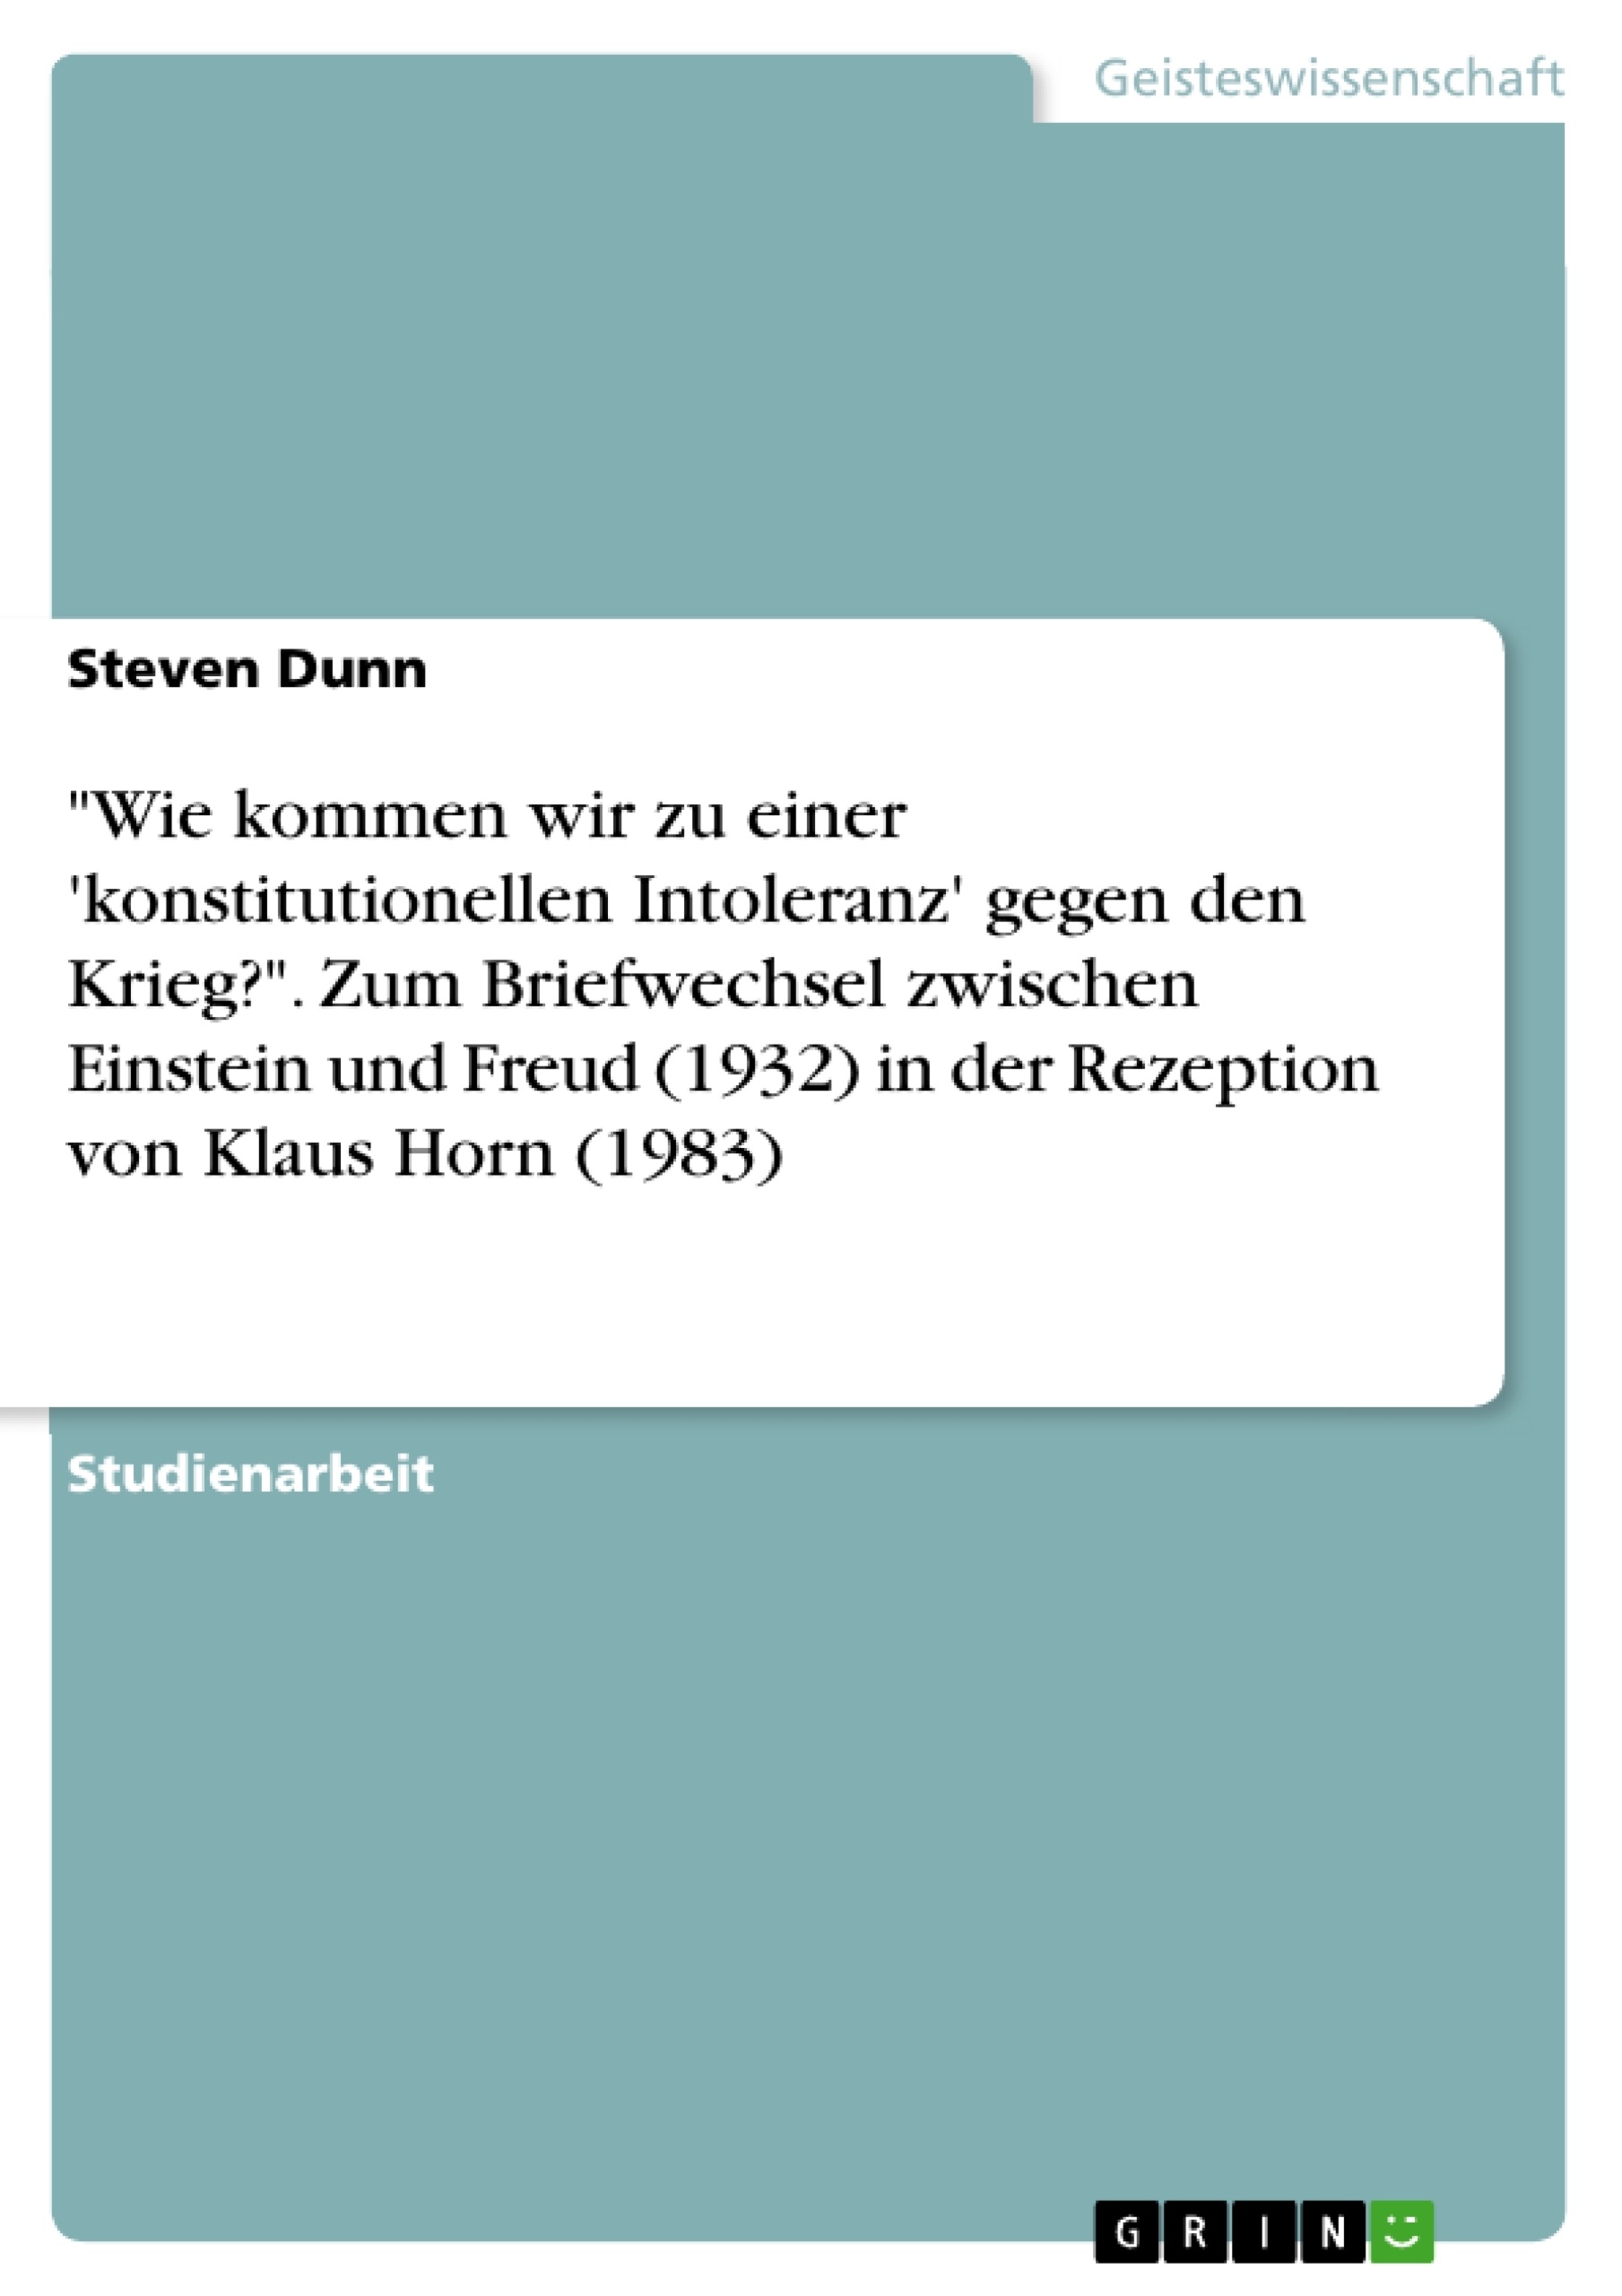 Title: "Wie kommen wir zu einer 'konstitutionellen Intoleranz' gegen den Krieg?". Zum Briefwechsel zwischen Einstein und Freud (1932) in der Rezeption von Klaus Horn (1983)